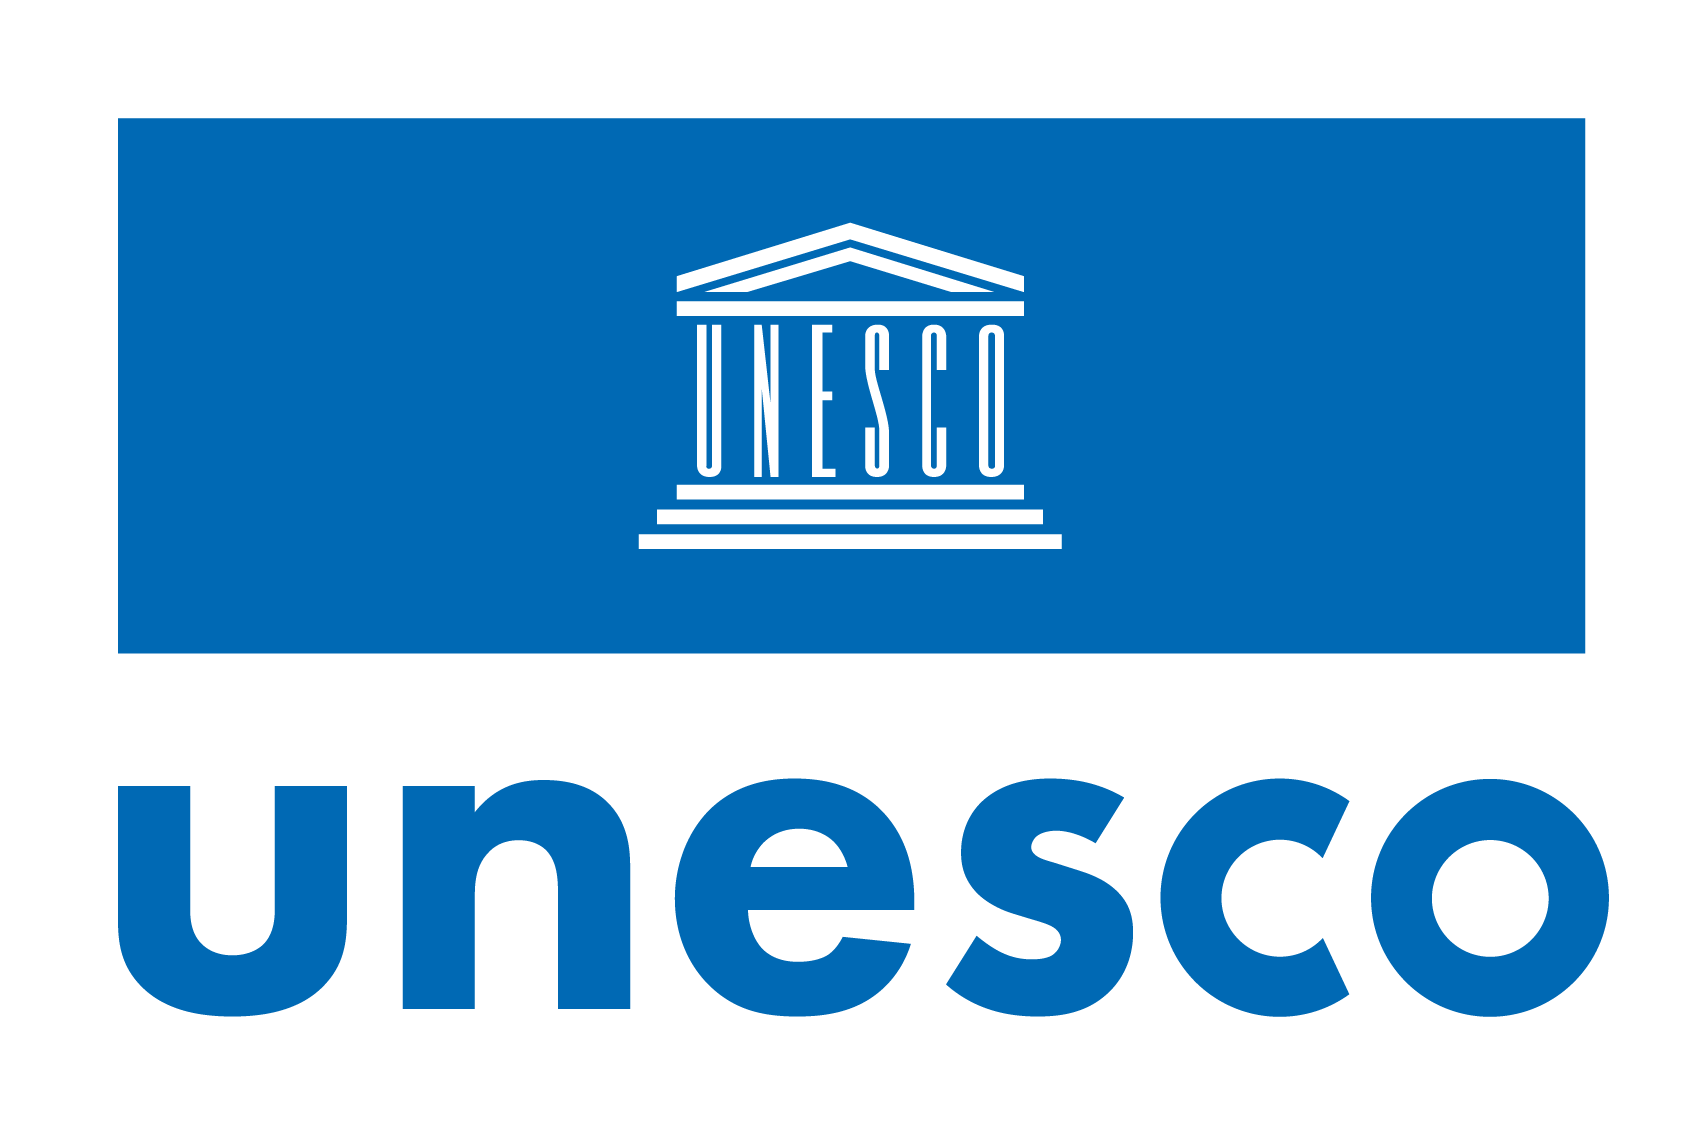 UNESCO_logo_ver_blue